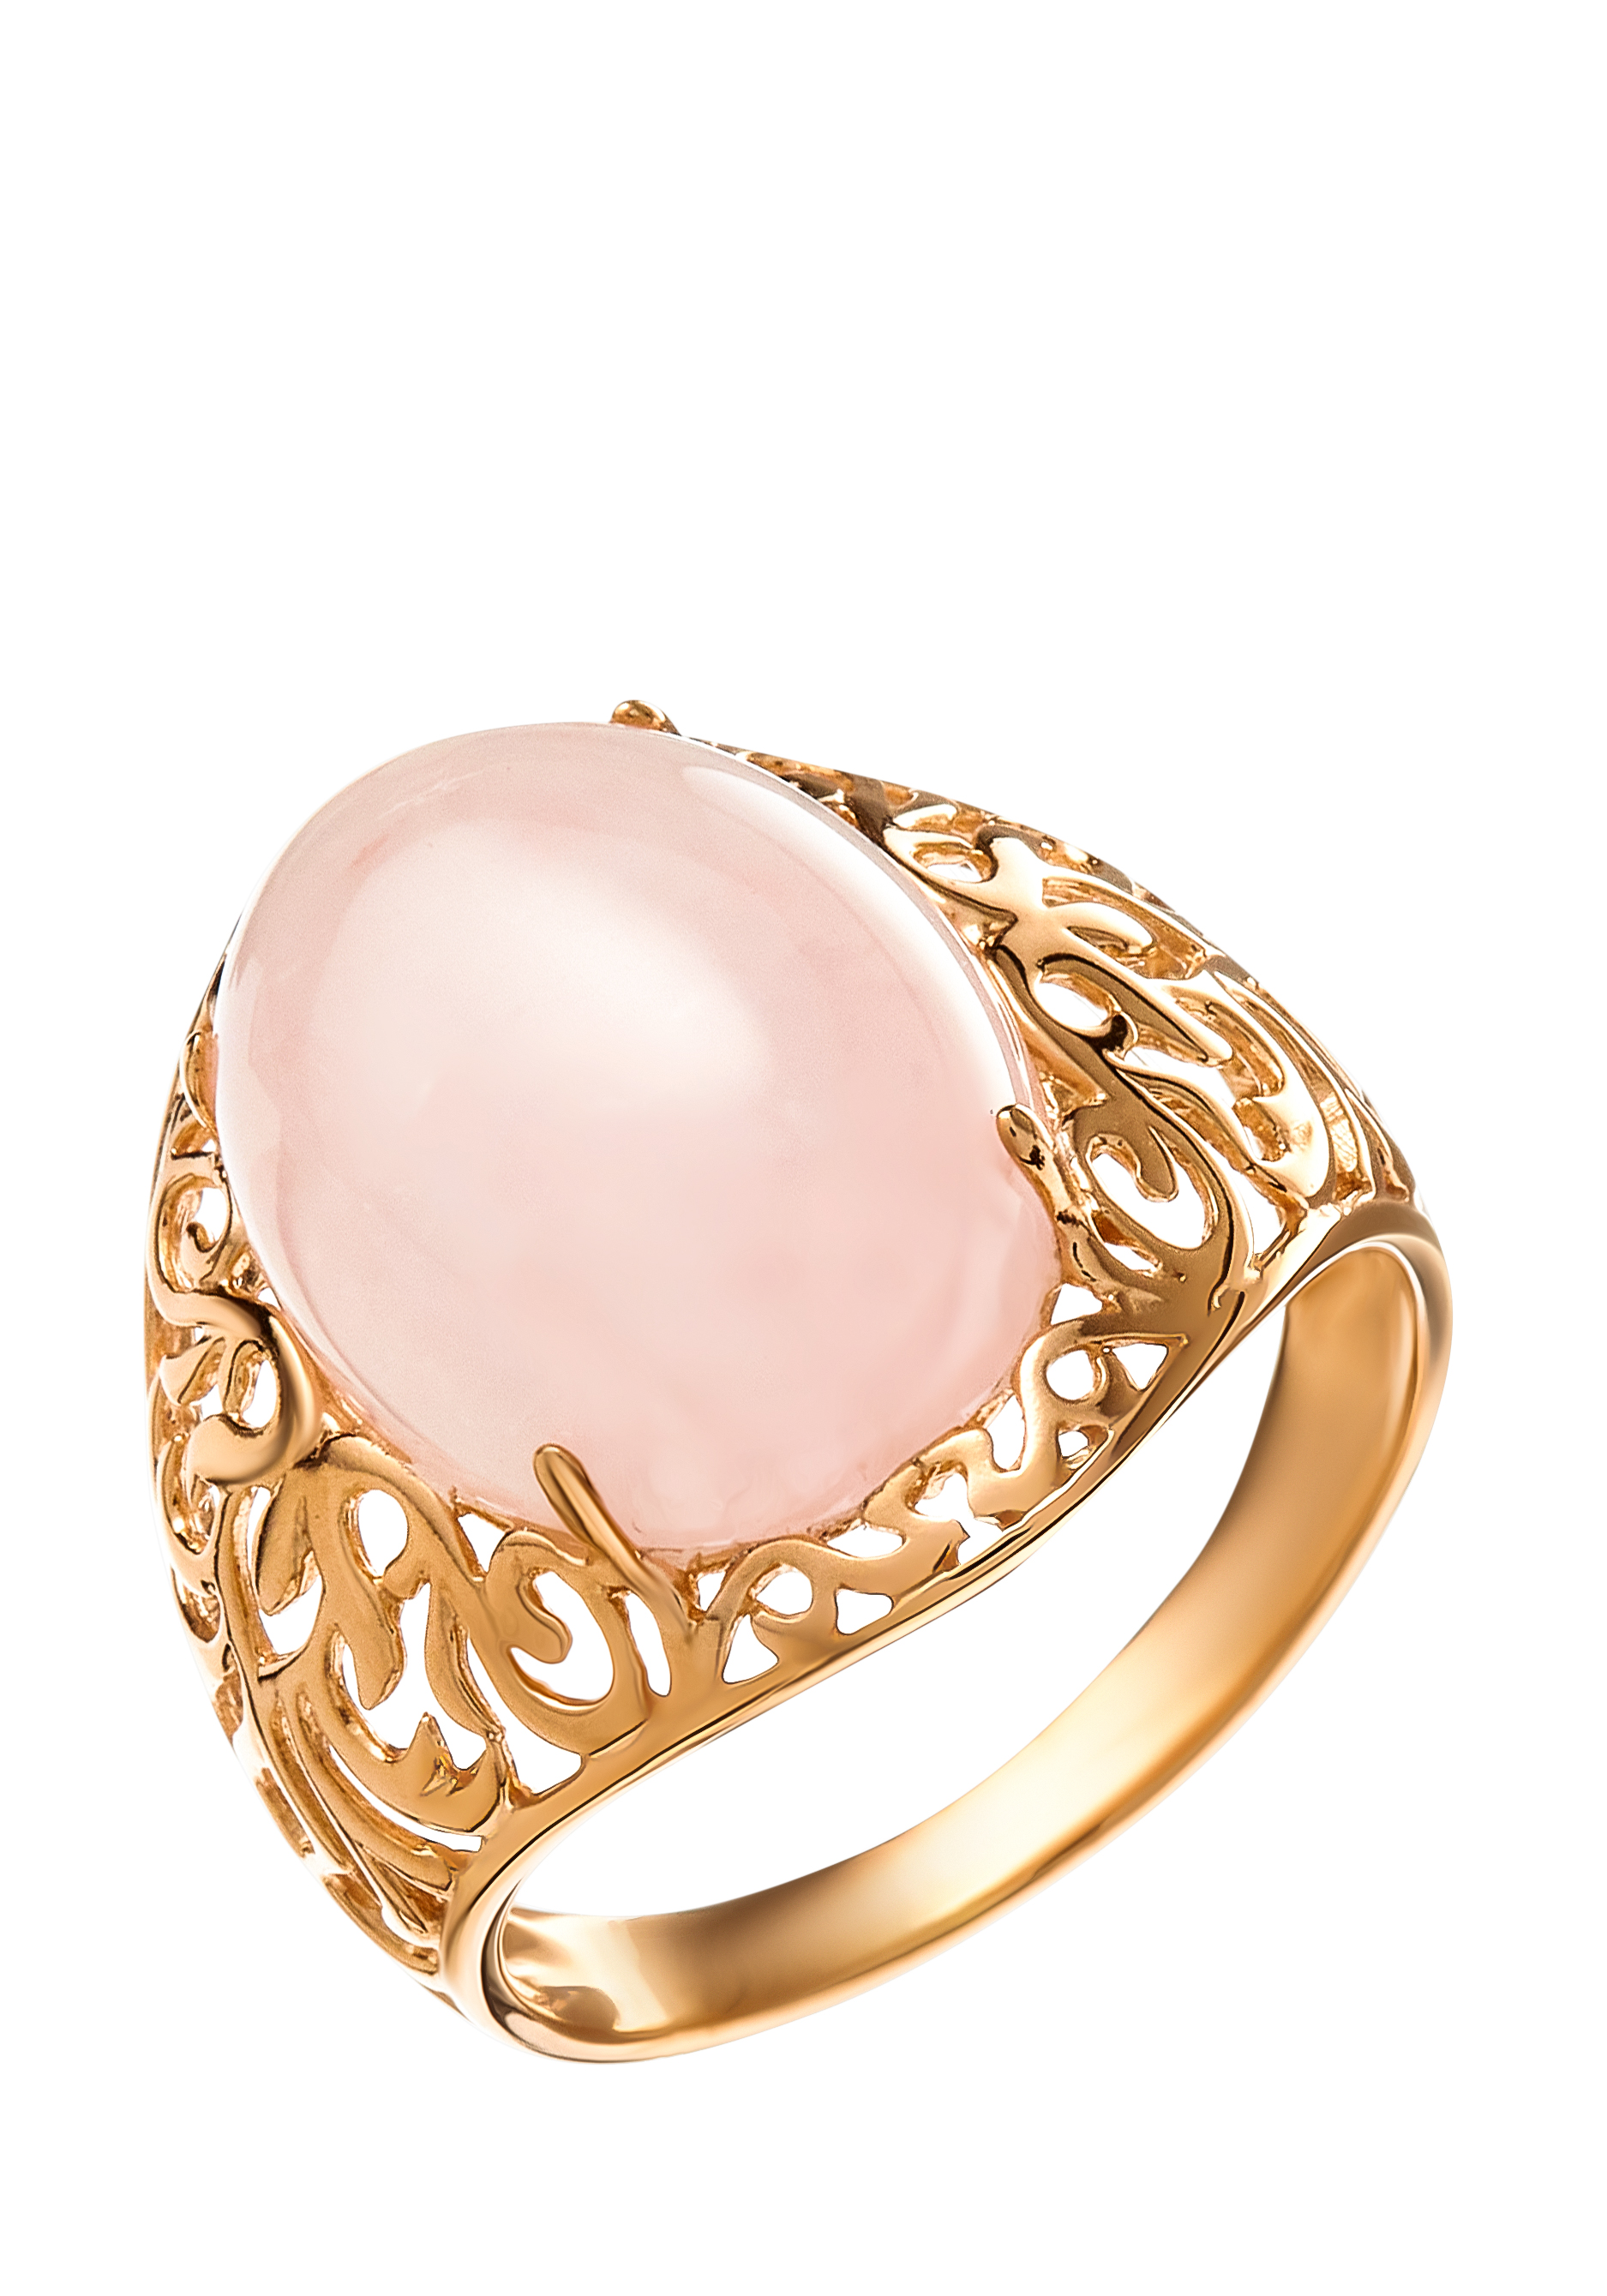 Кольцо серебряное "Элегантная нежность" Nouvelle, цвет розовый, размер 20 перстень - фото 1